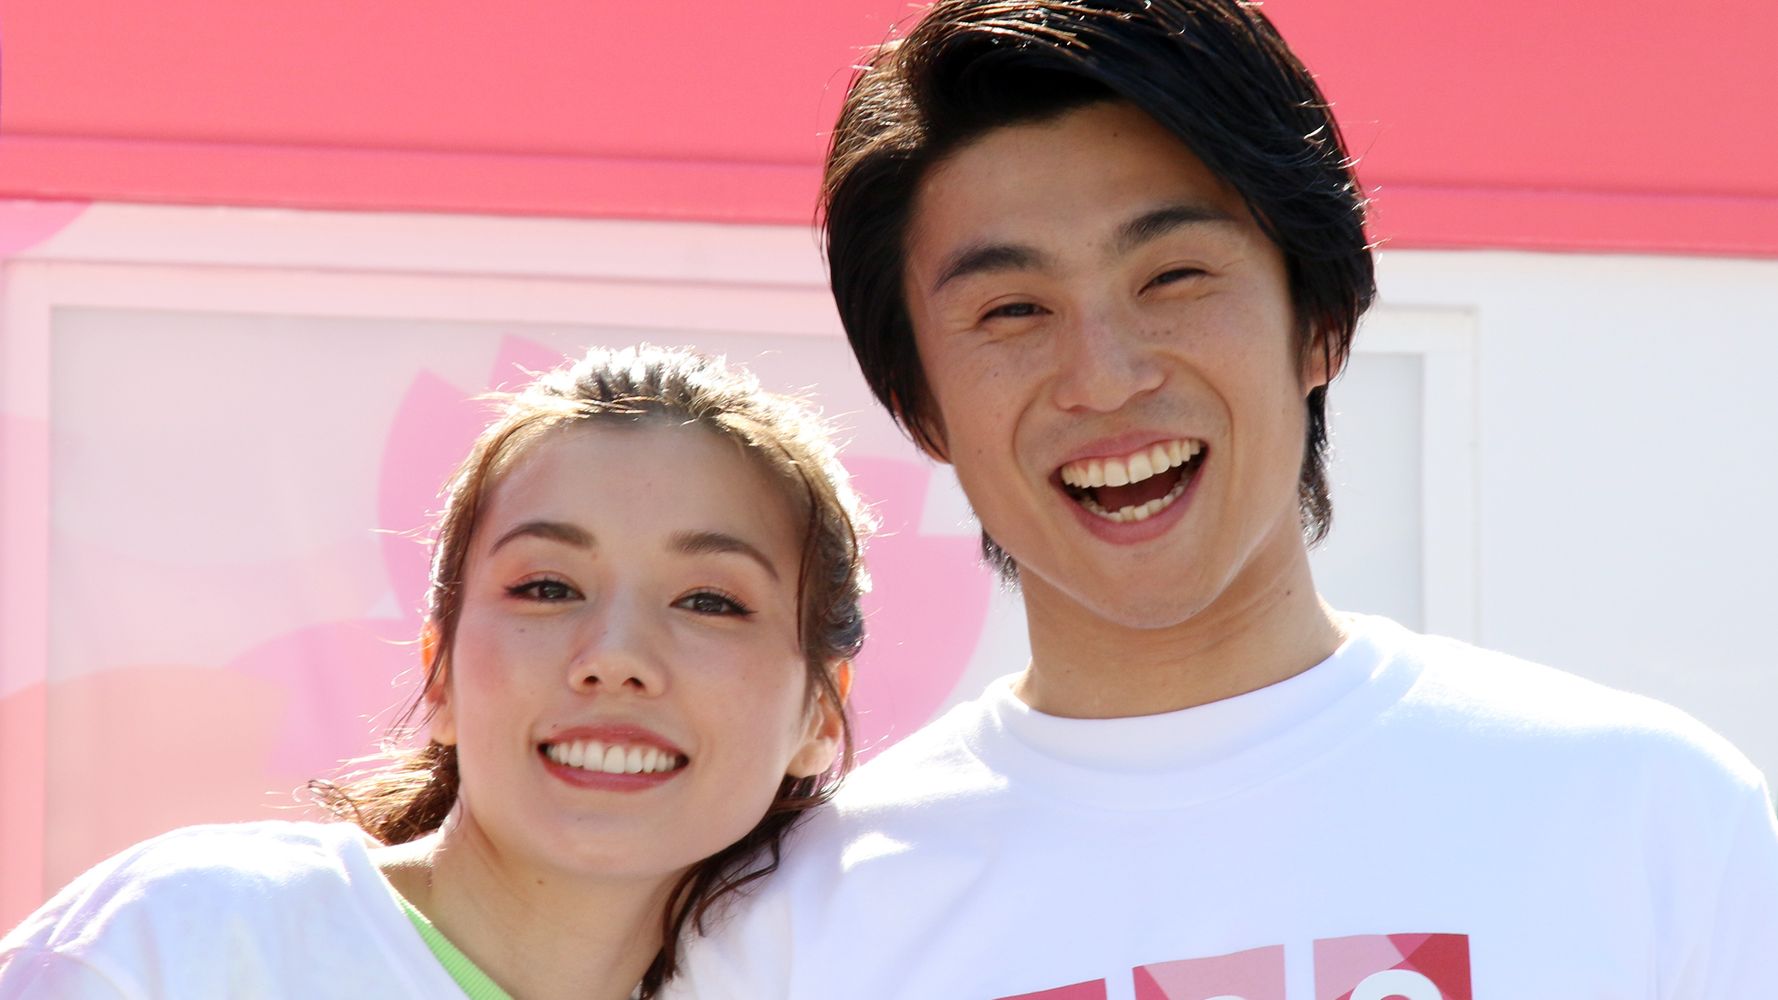 中尾明慶さん、仲里依紗さんが結婚9周年のツーショット。「ほんっと憧れの夫婦です」と祝福コメント相次ぐ